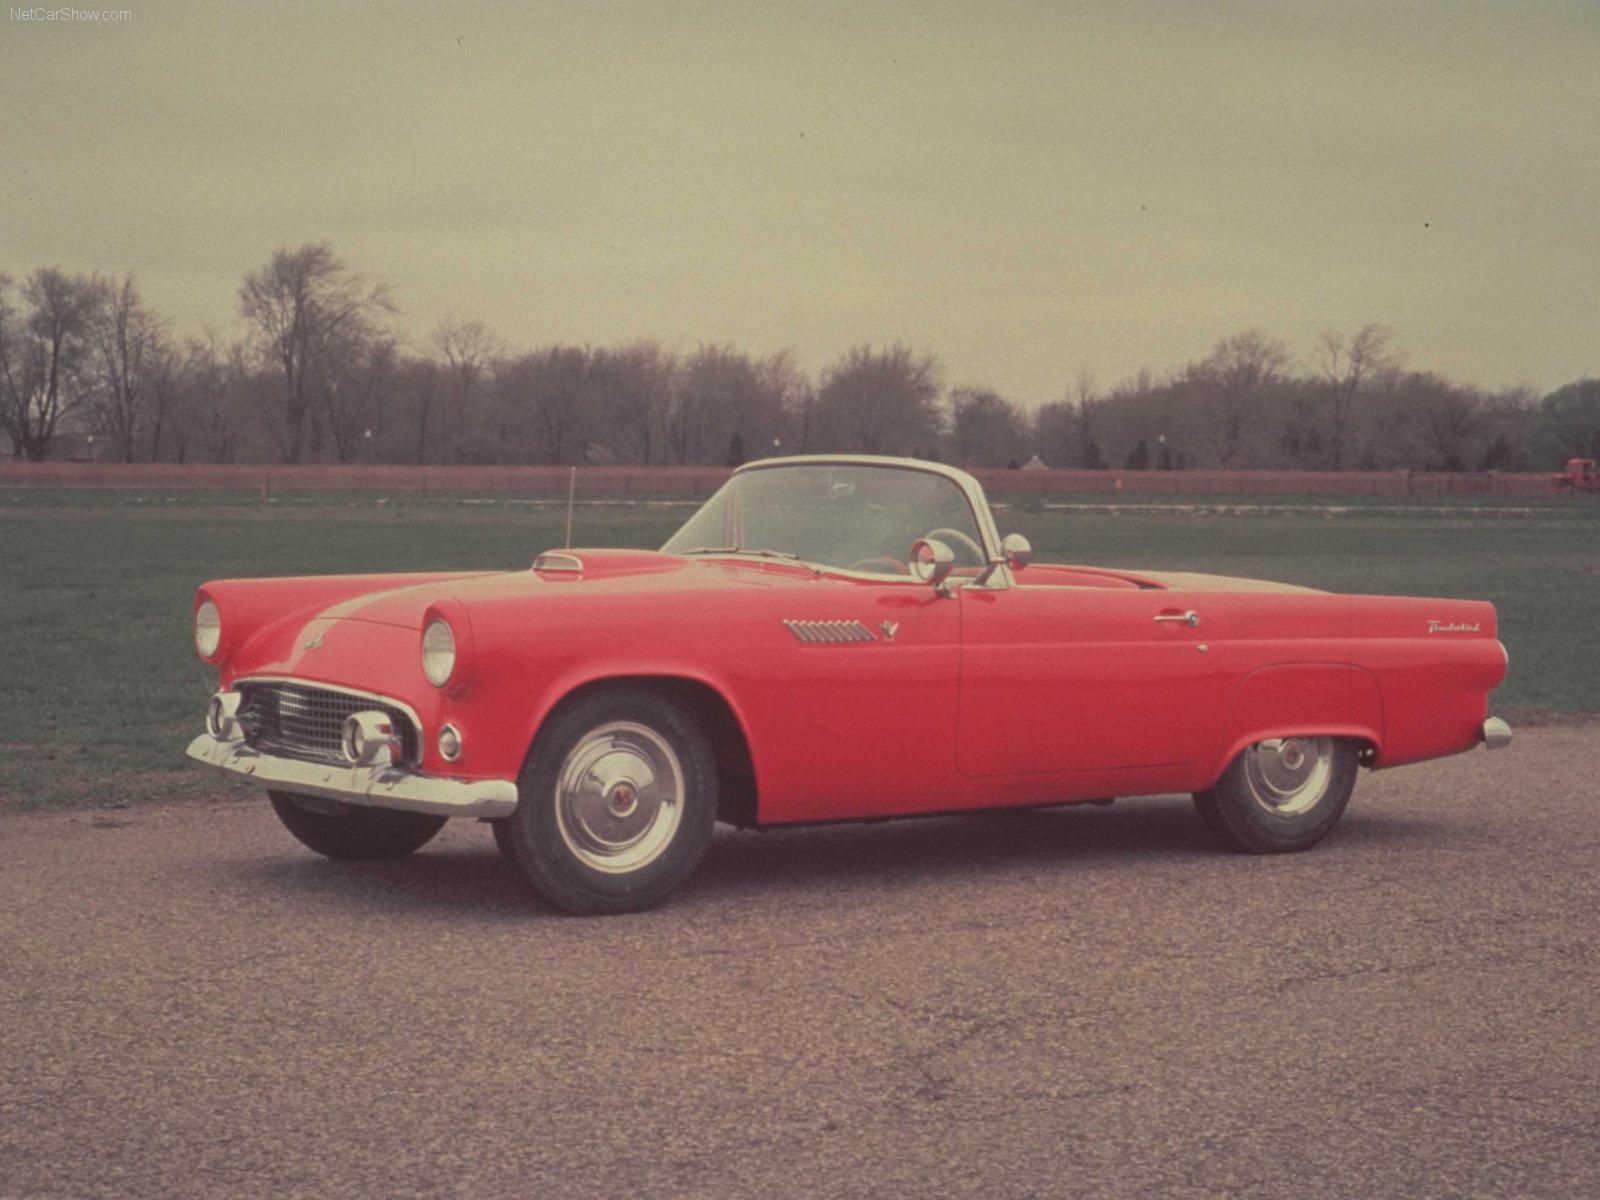 20世纪50到70年代的美国汽车有哪些经典的设计?